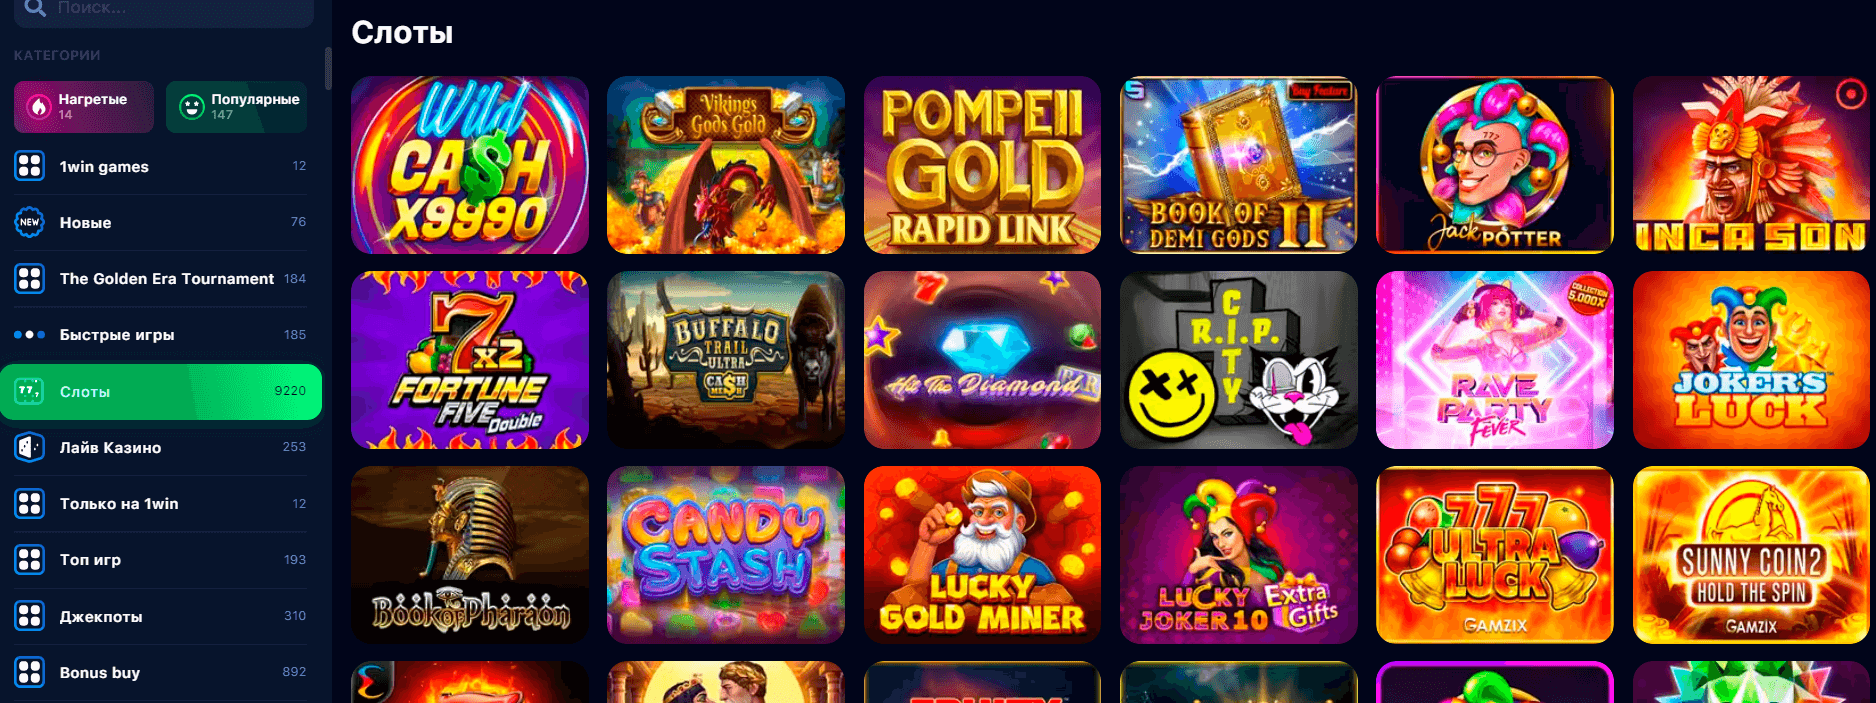 Виды азартных игр на сайте